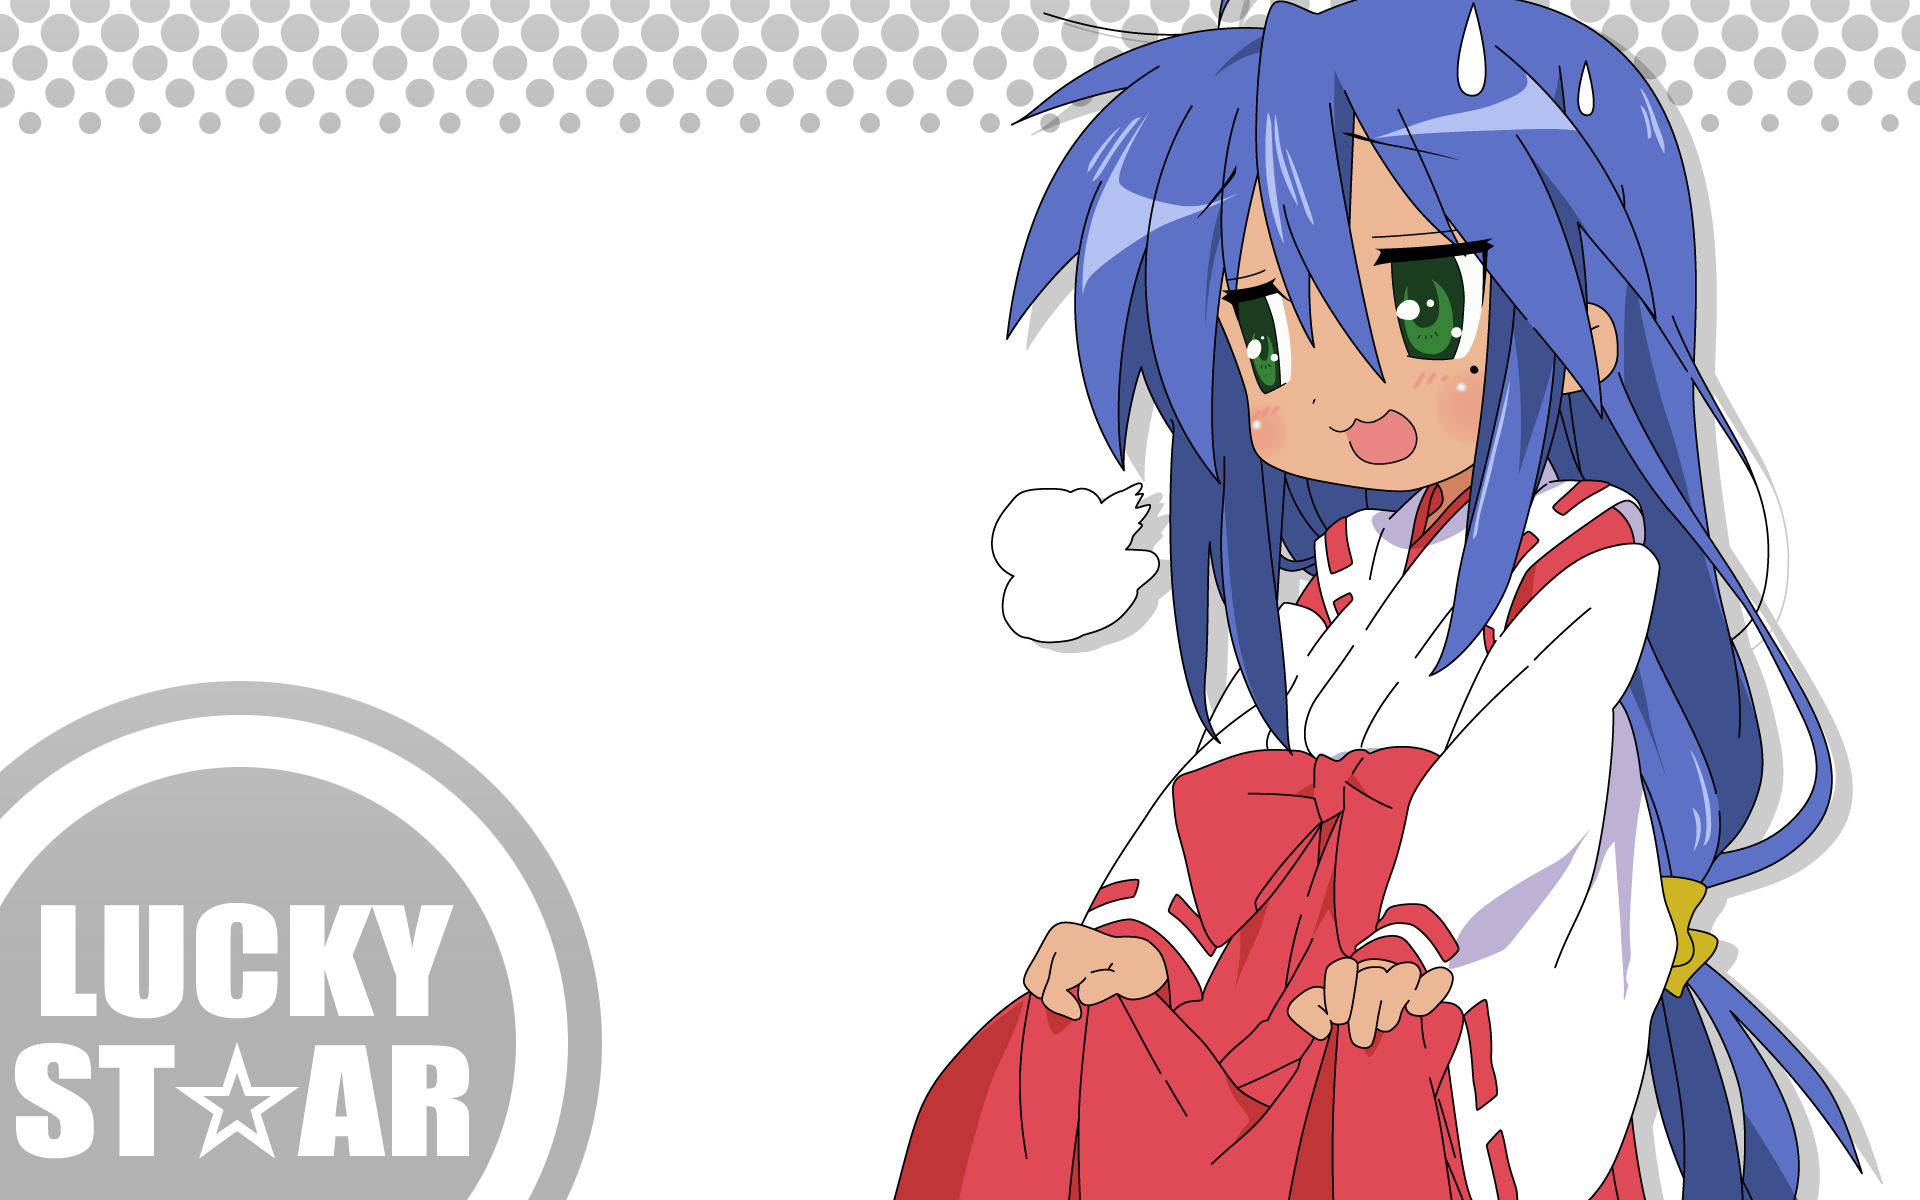 Счастливая Звезда (Лаки Стар), Мико, японская одежда, Izumi Konata - обои на рабочий стол